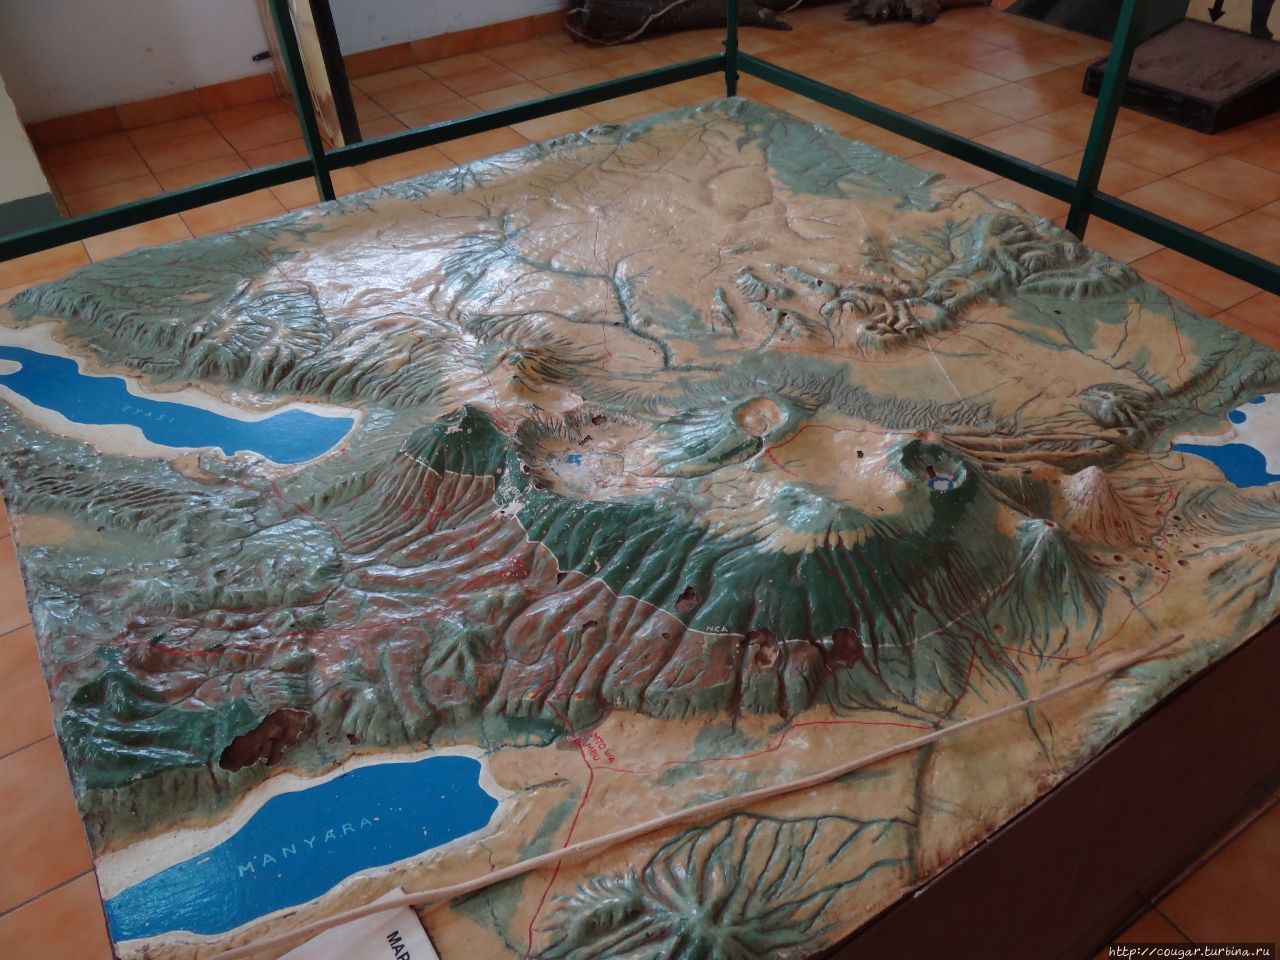 Модель Кратерного нагорья в местном музее. Наш путь — через Нгоронгоро мимо кратера Эмпакаи в правый угол модели, к озеру Натрон. Нгоронгоро (заповедник в кратере вулкана), Танзания